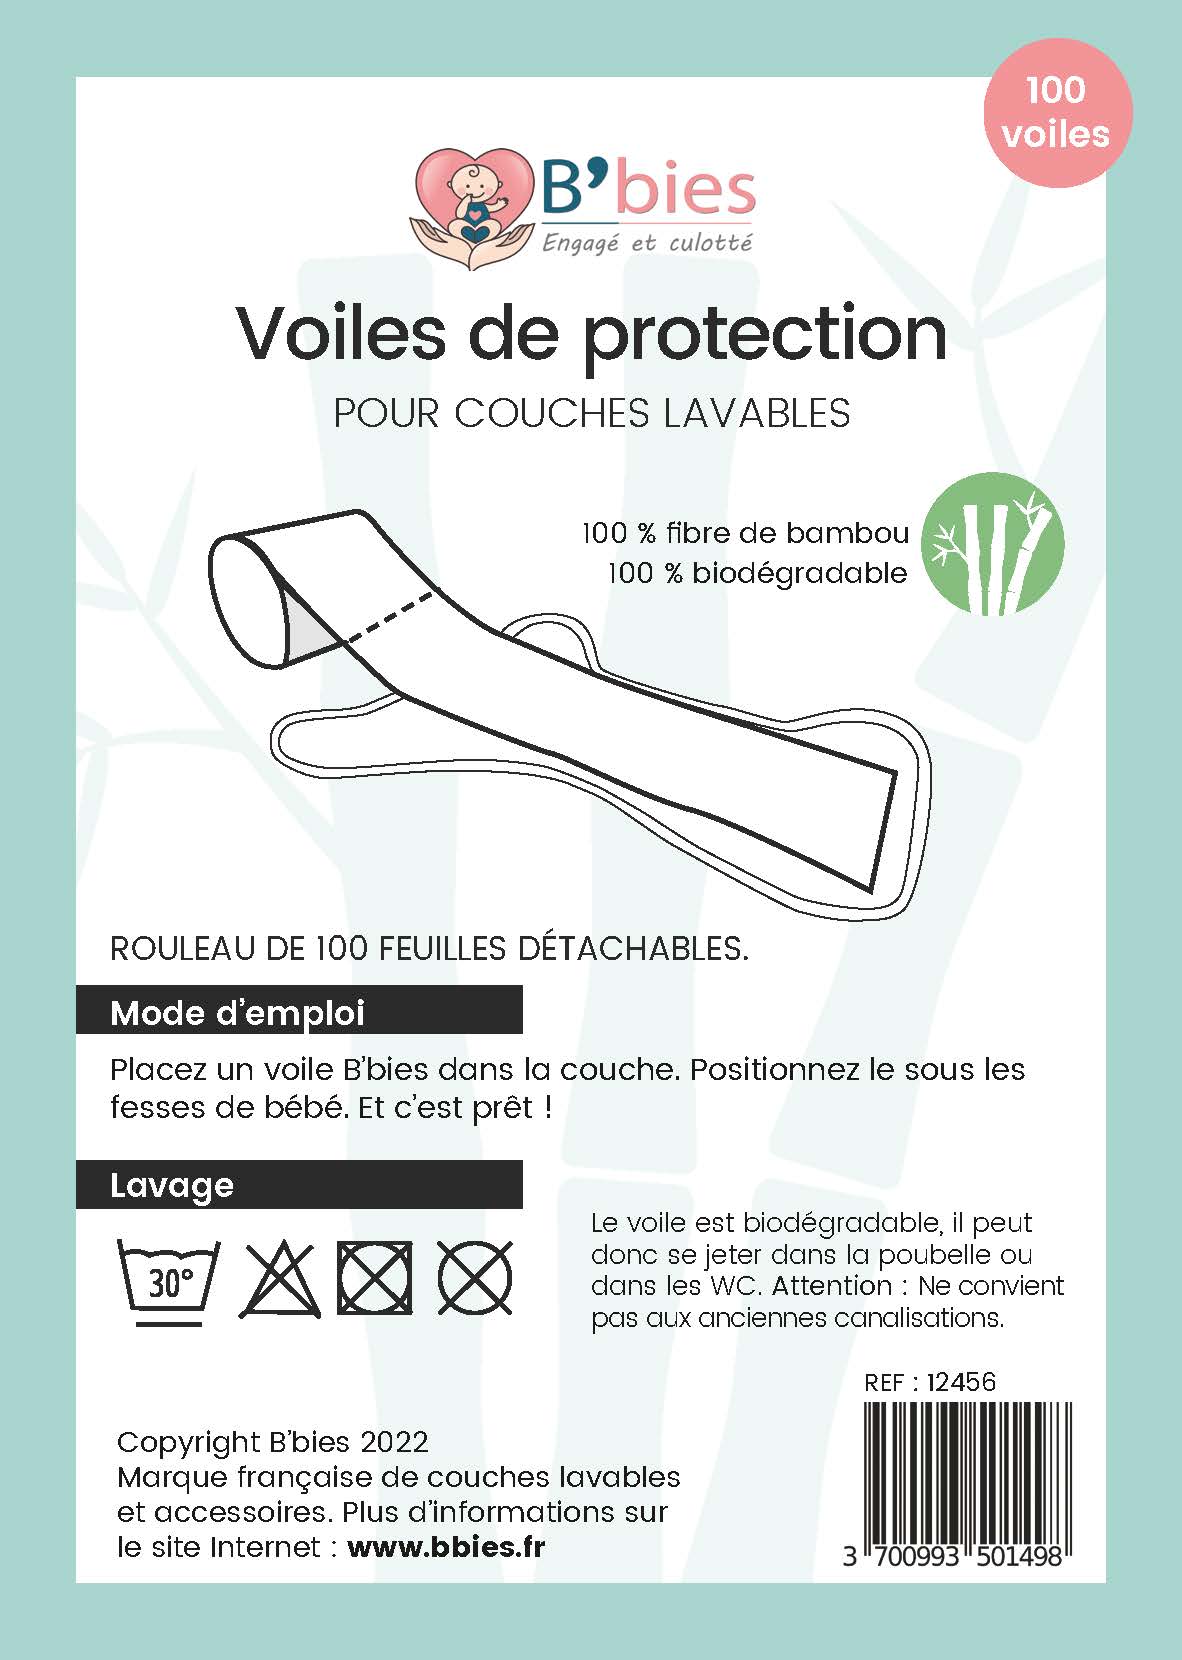 Voile de protection biodegradable - Couche lavable - LA BONNE COUCHE